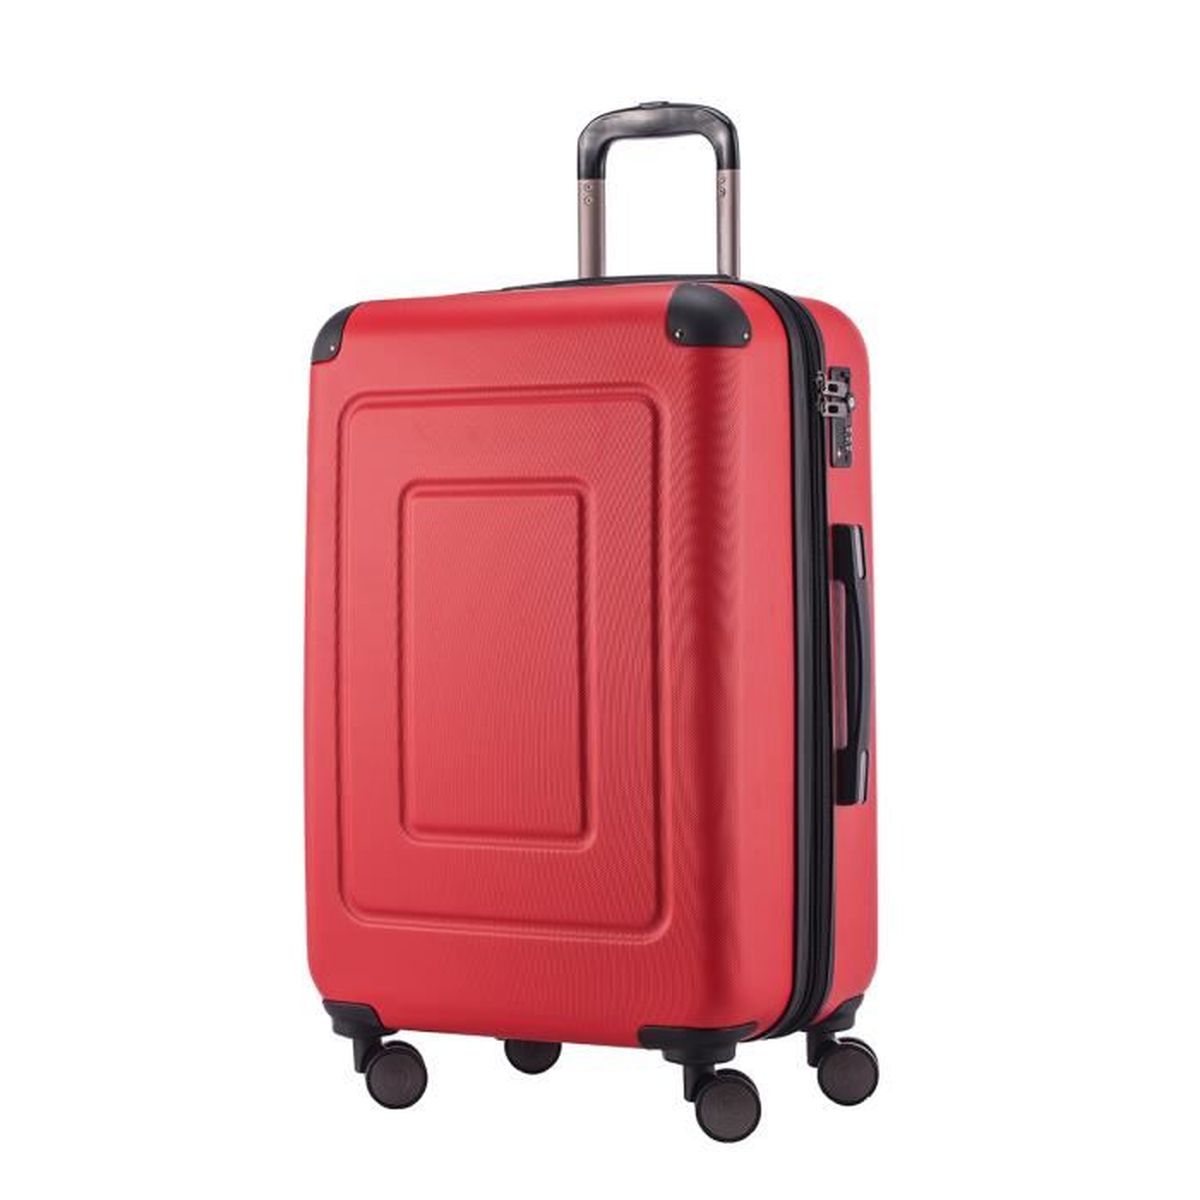 Coque rigide valise trolley valise de voyage voyage trolley bagages à main hibou L